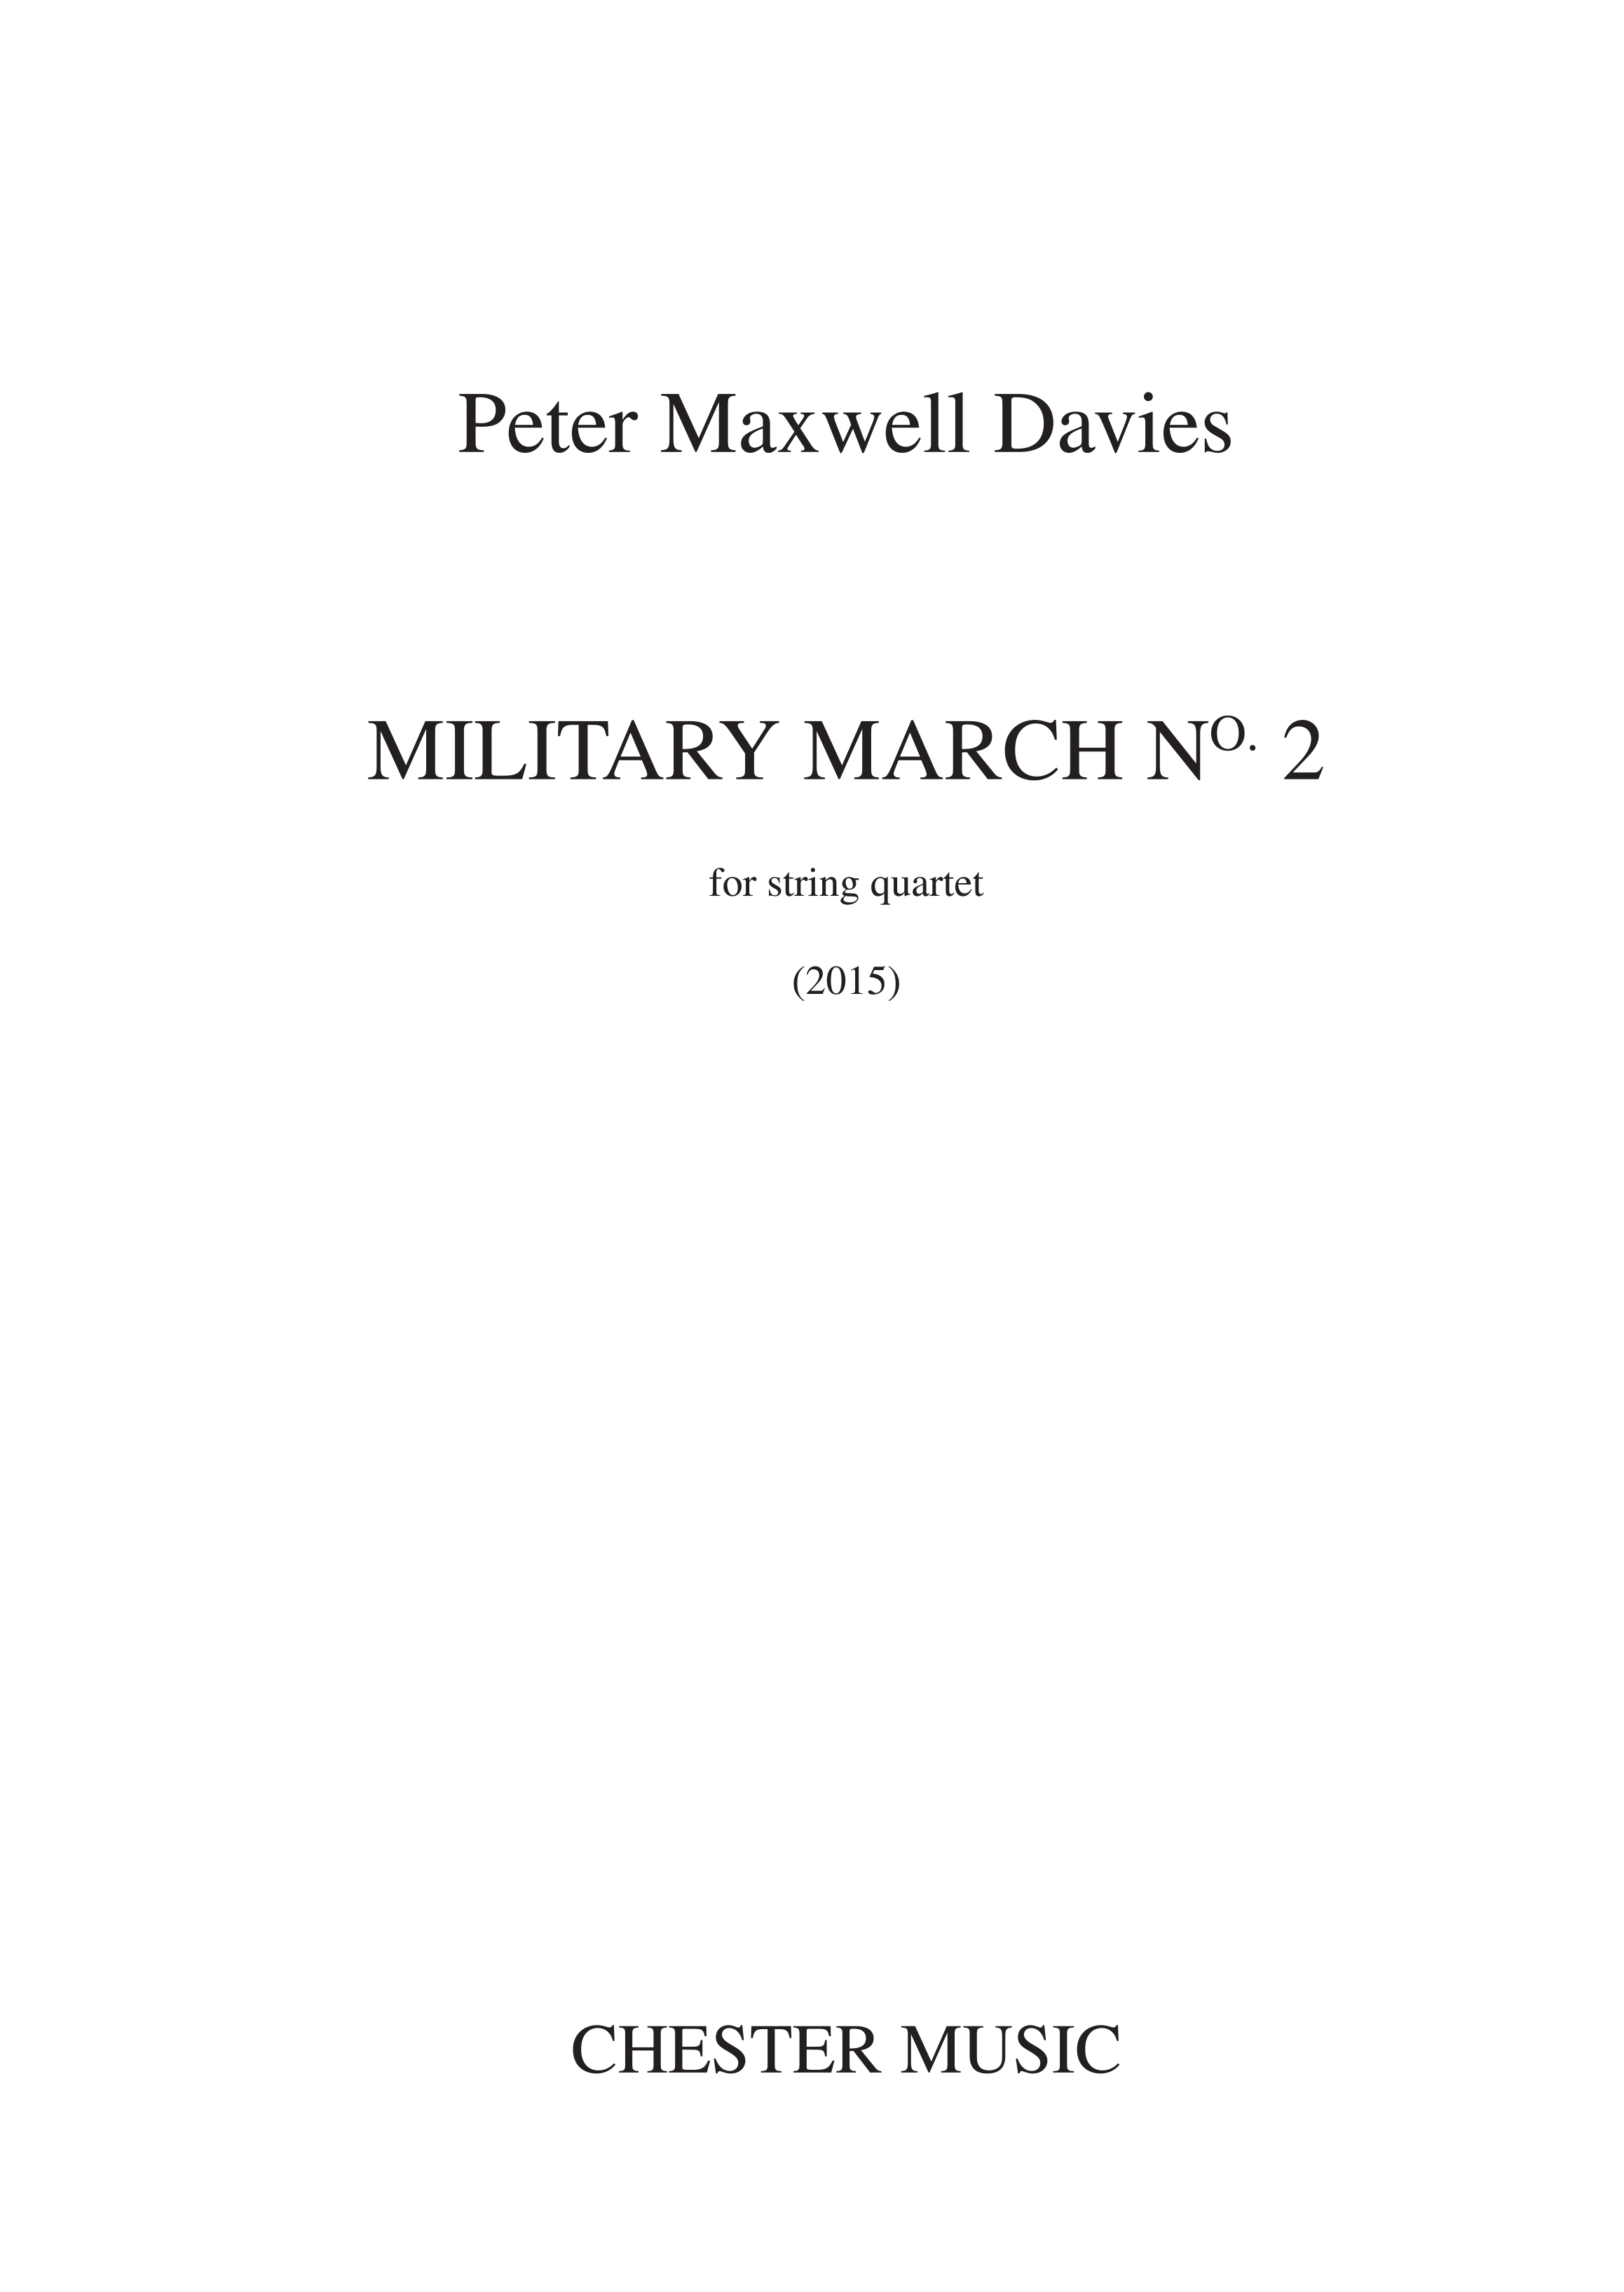 Peter Maxwell Davies: Peter Maxwell Davies: Military March No.2: String Quartet: